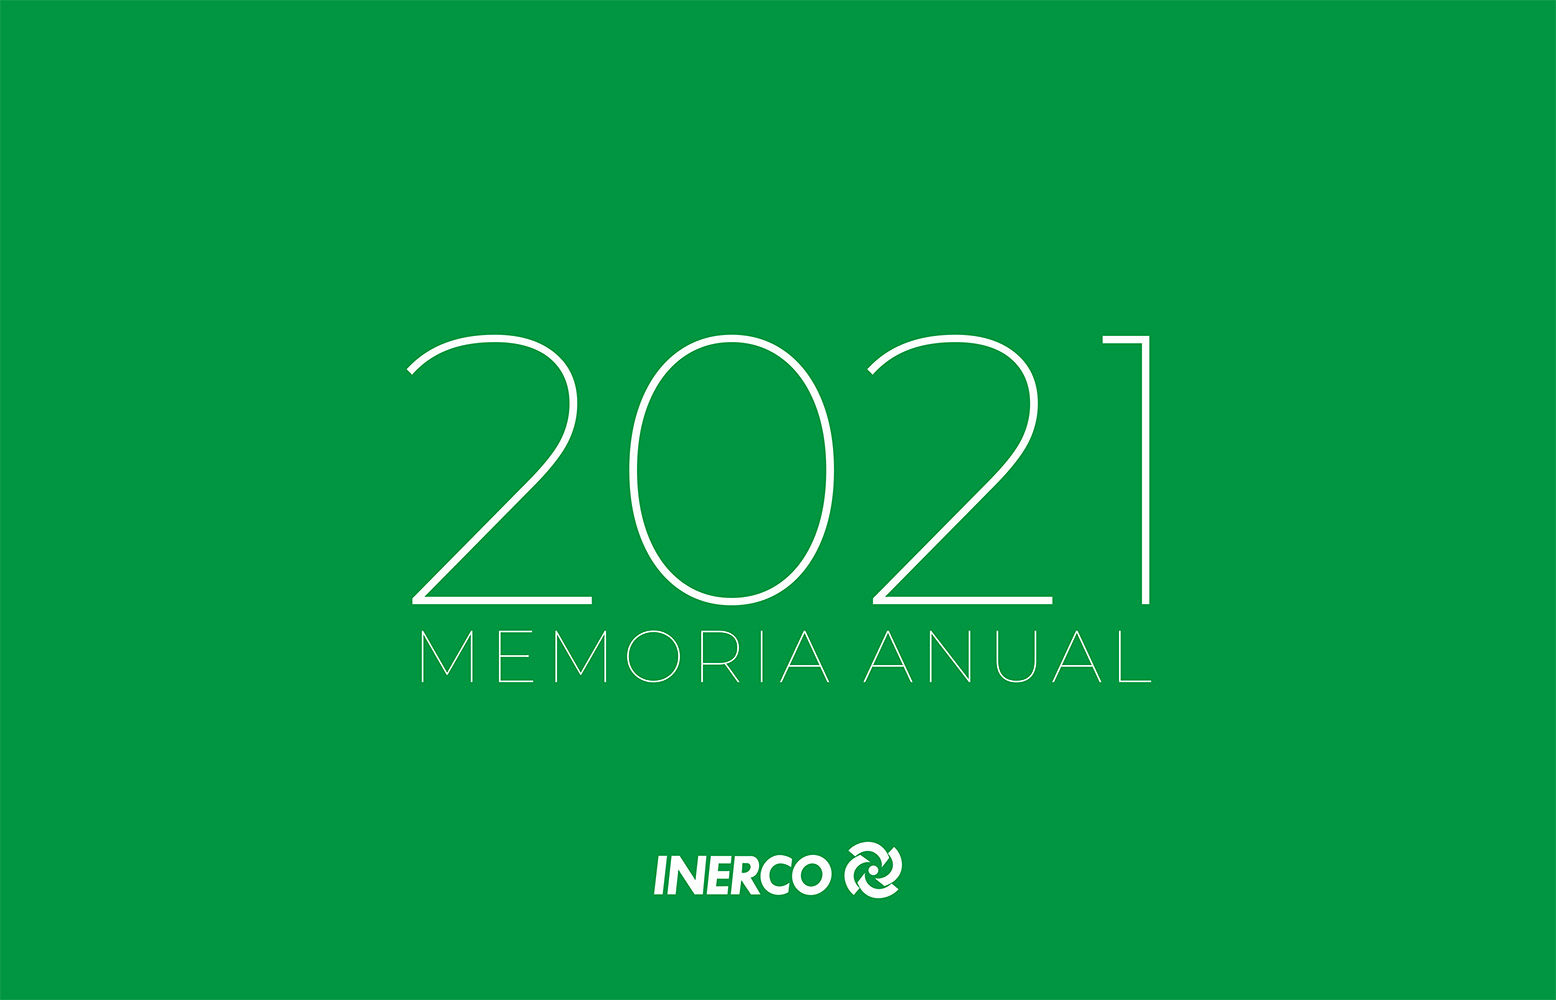 INERCO Memoria Anual 2021